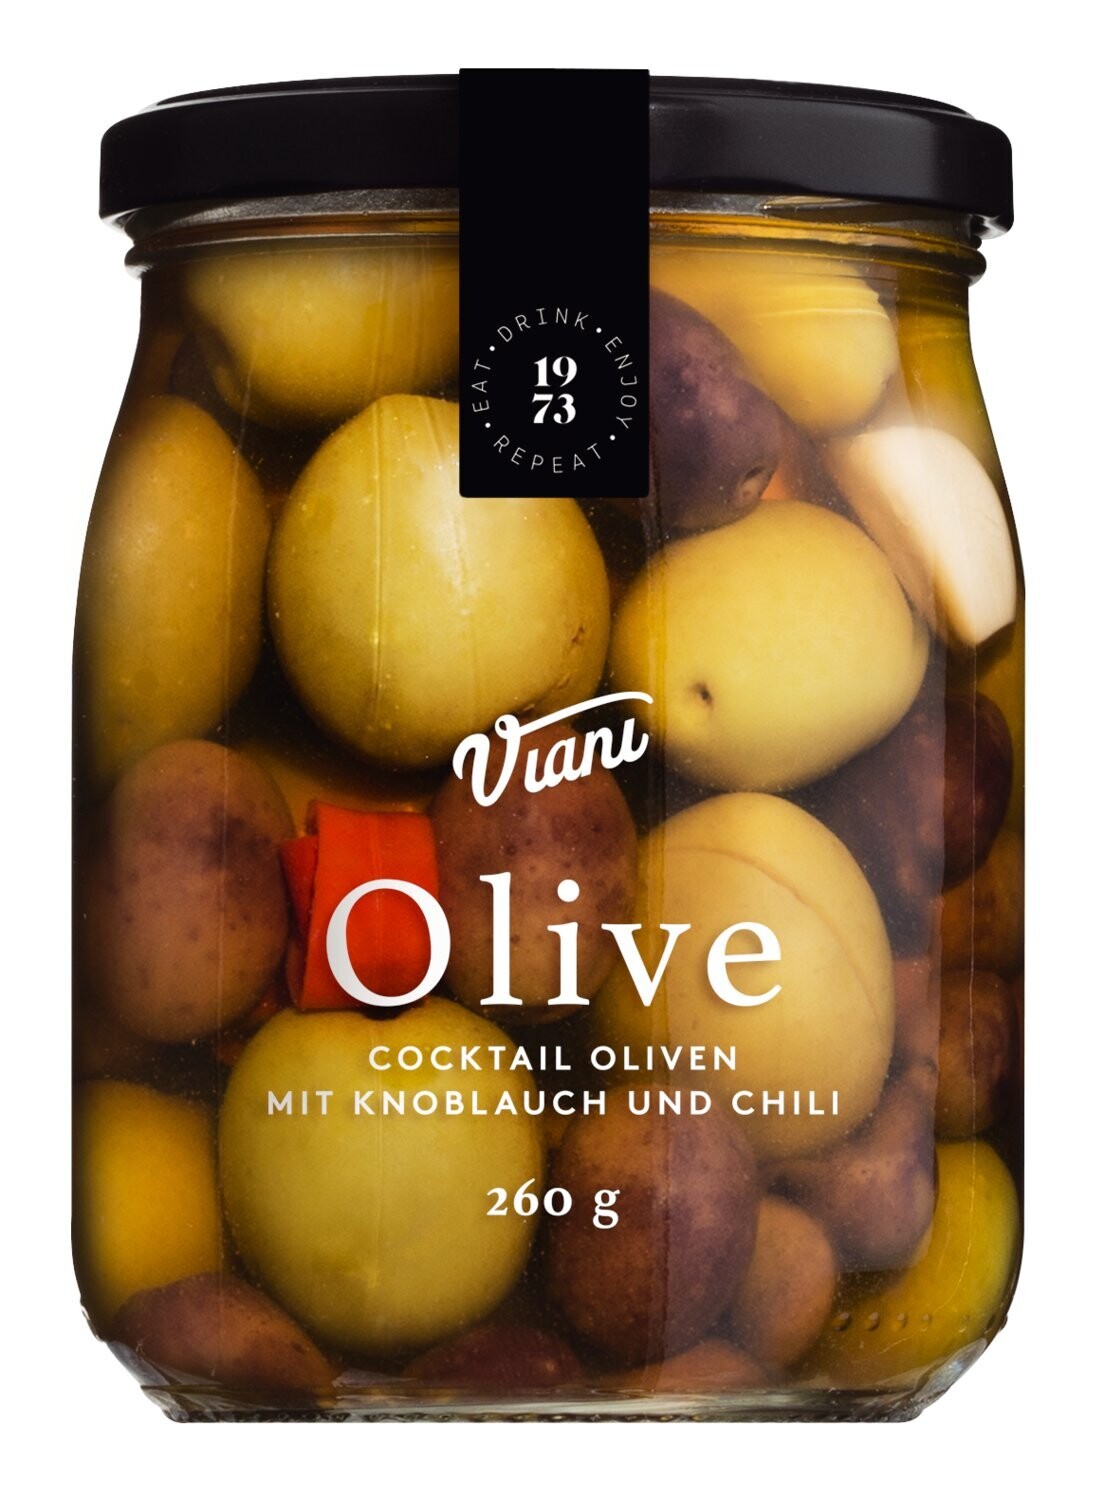 Cocktail Oliven mit Knoblauch und Chili